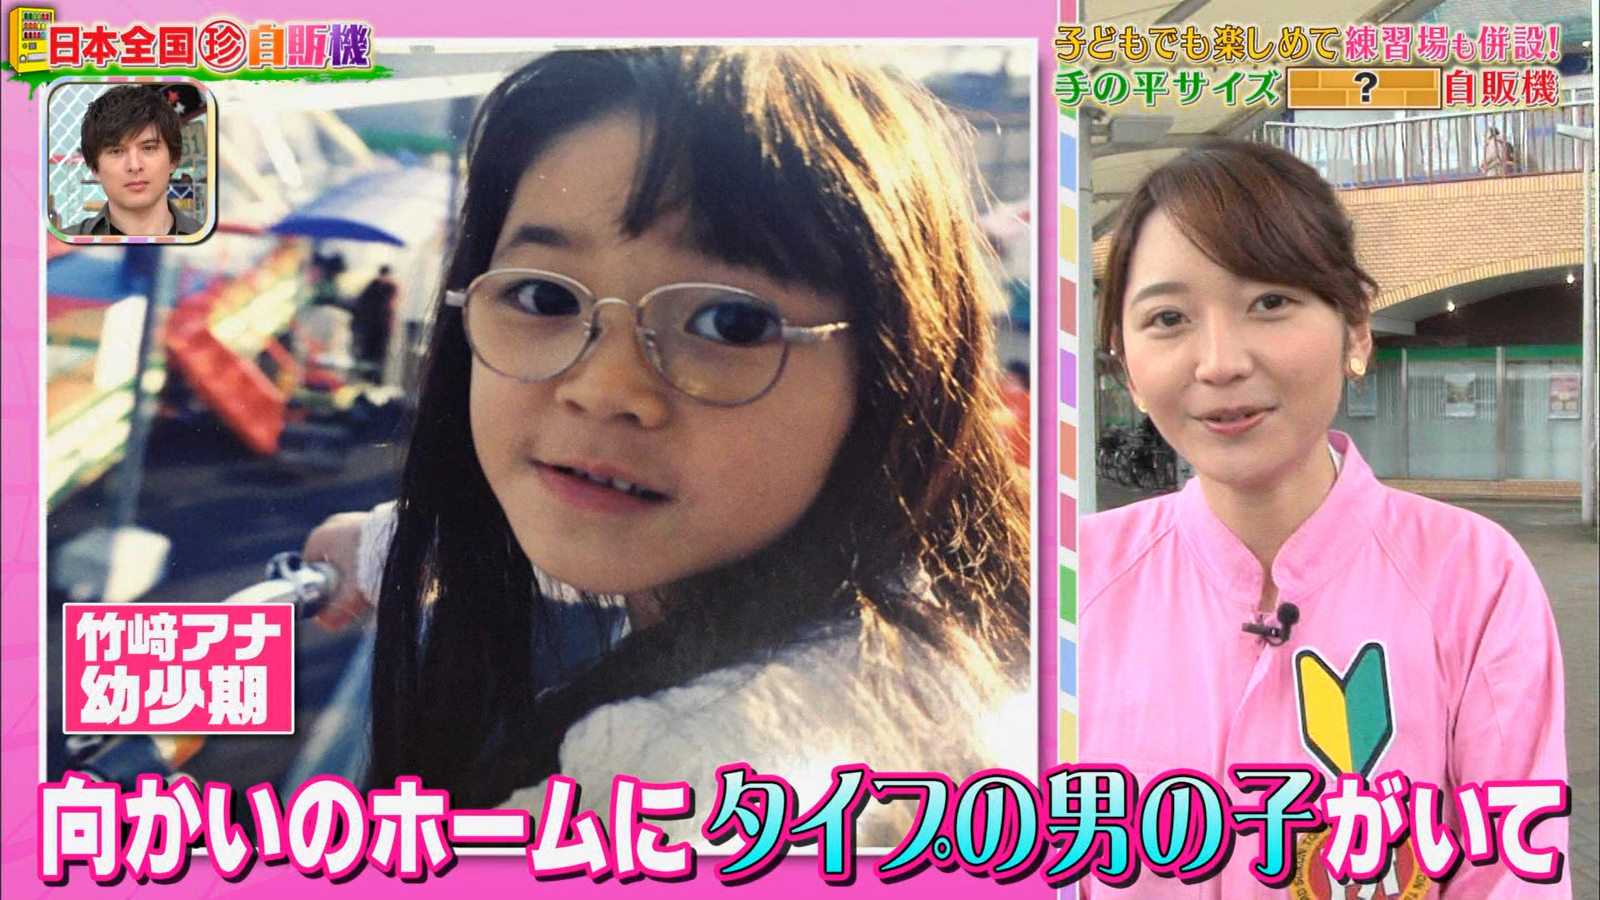 画像 今日の竹崎由佳さん 子供の頃の写真が可愛い 3 激烈 女子アナニュース